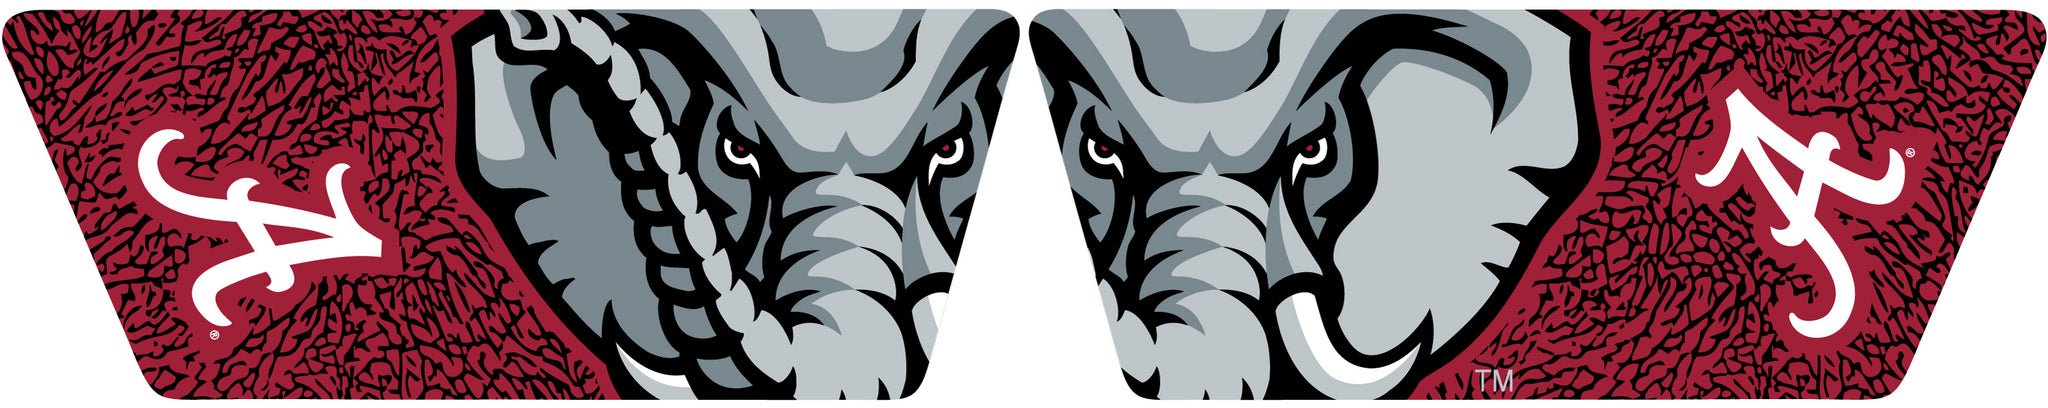 University of Alabama Red Elephant Slydr Pro